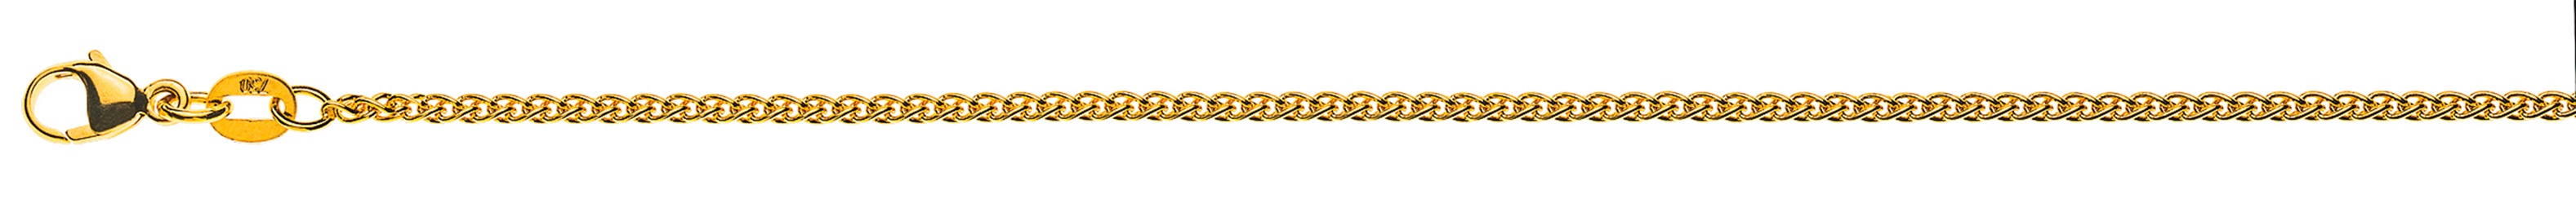 AURONOS Style Halskette Gelbgold 9K Zopfkette 45cm 1.65mm